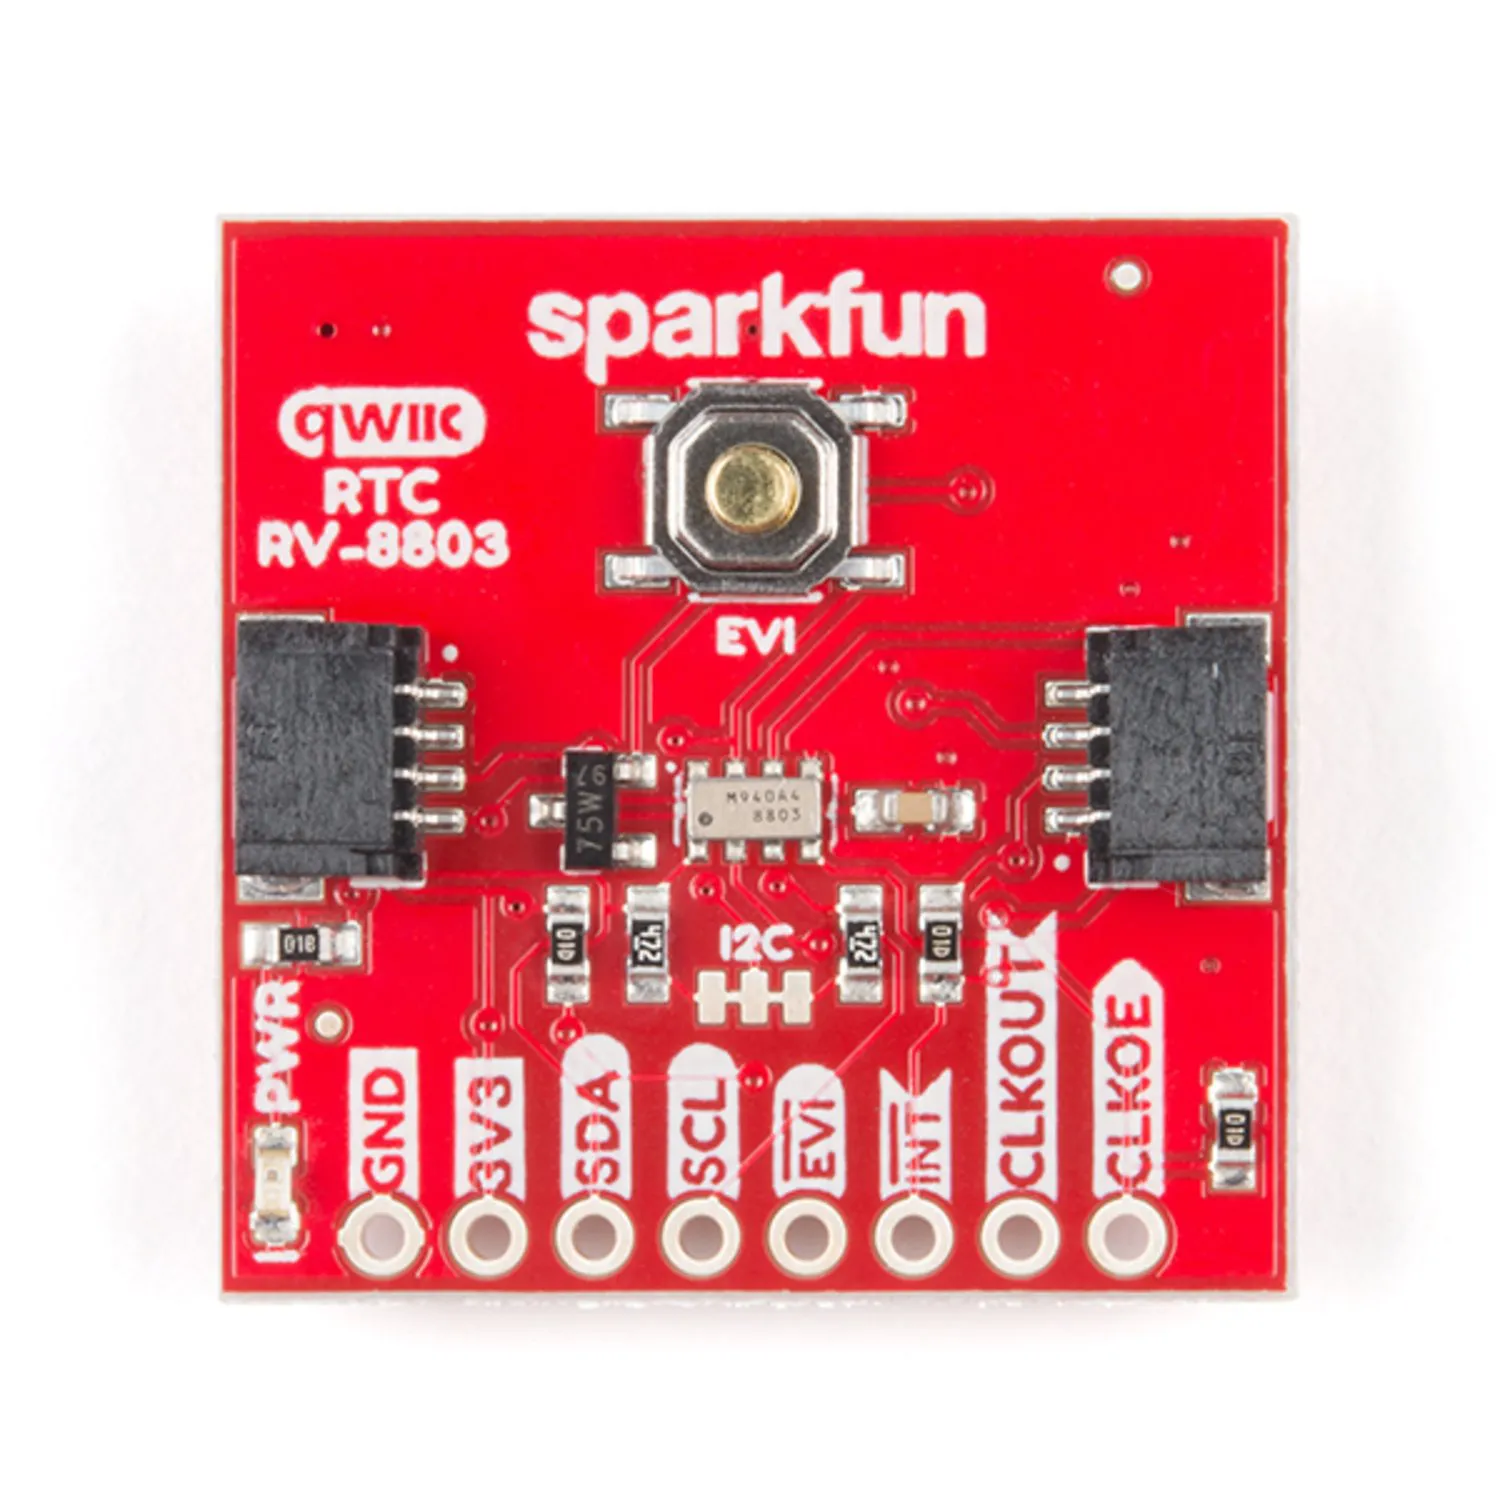 Photo of SparkFun Real Time Clock Module - RV-8803 (Qwiic)